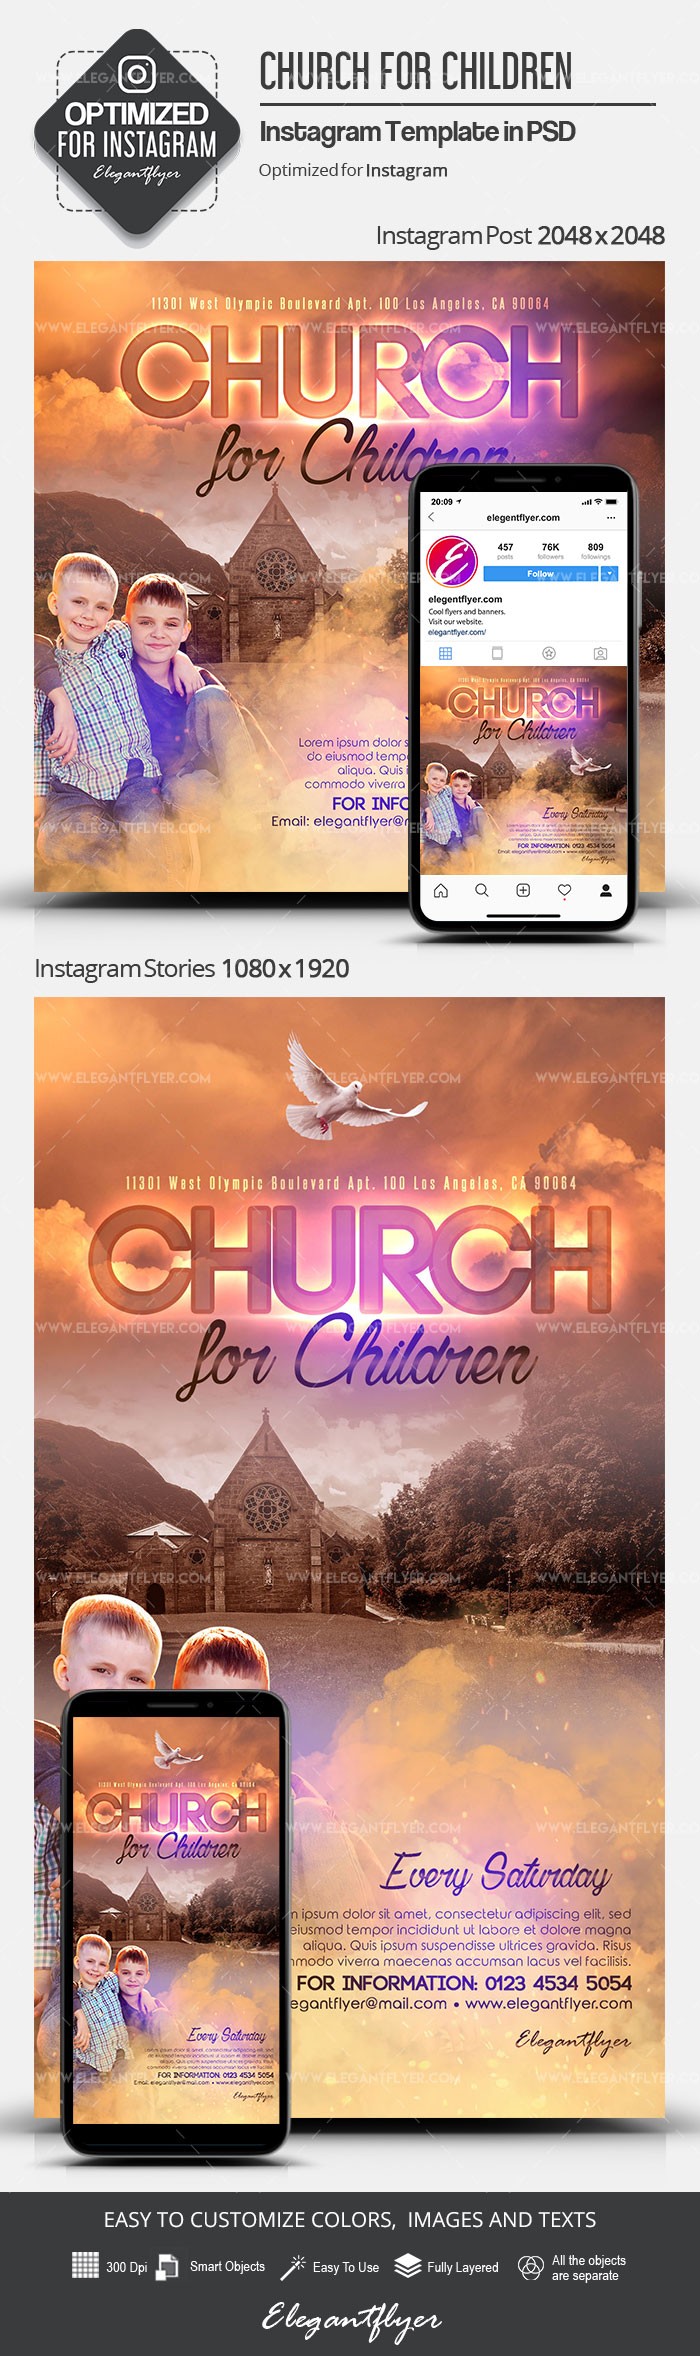 Igreja para Crianças no Instagram by ElegantFlyer